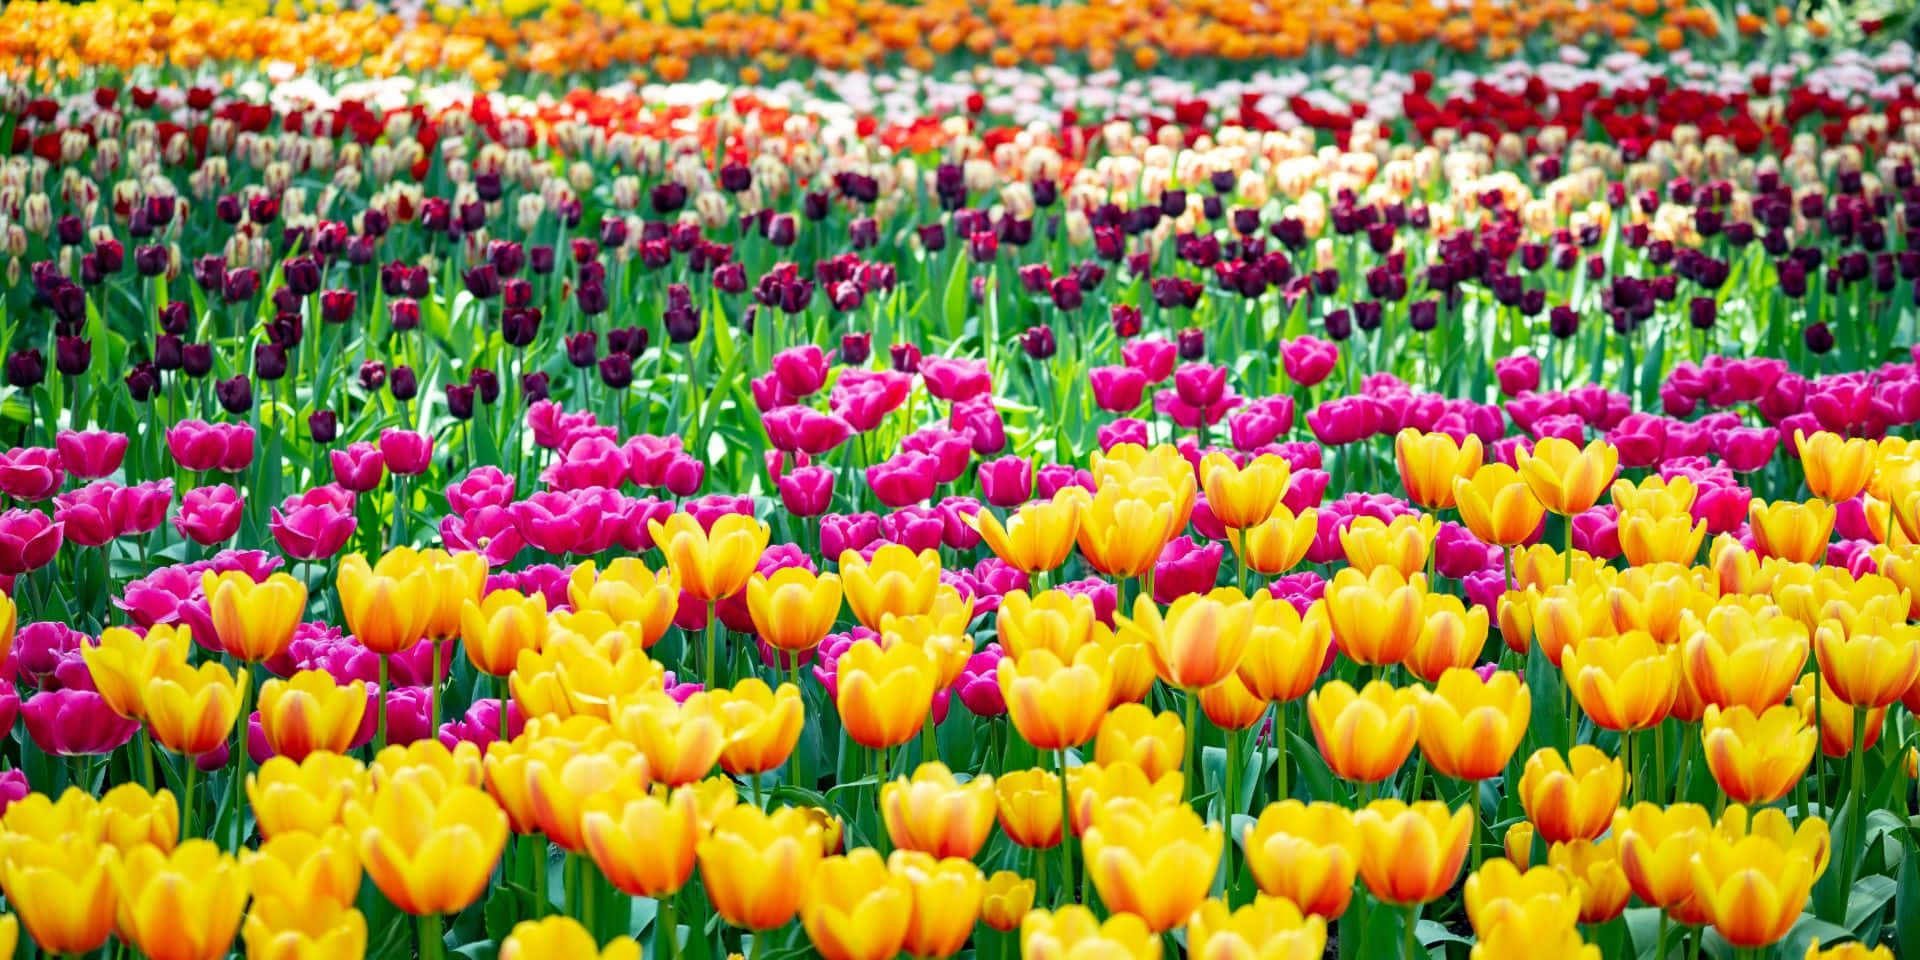 Fondode Pantalla Para Zoom De Campo De Tulipanes En Los Países Bajos En Primavera